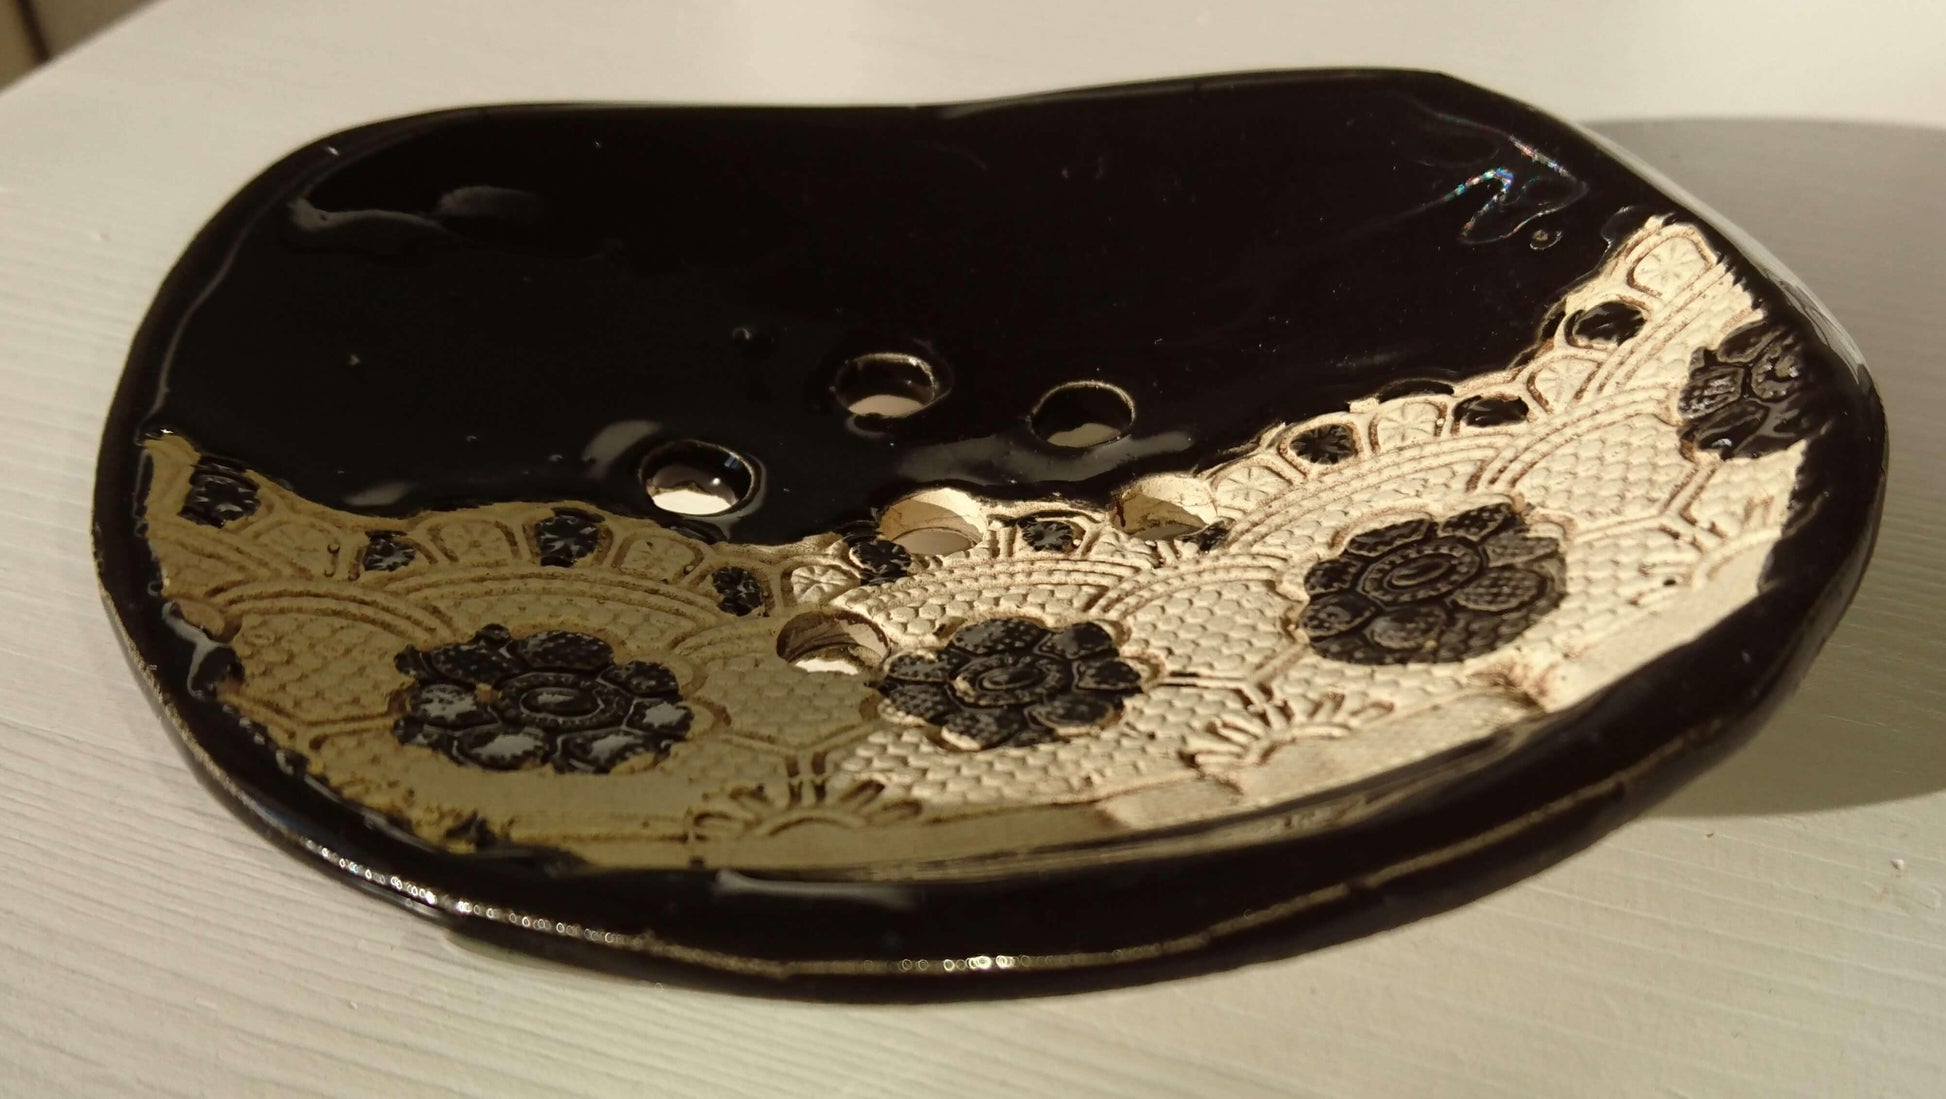 Spanische Keramik Seifenschale by "LaMar Design Mallorca" in schwarz ohne Schriftzug - KamelundMilch.de